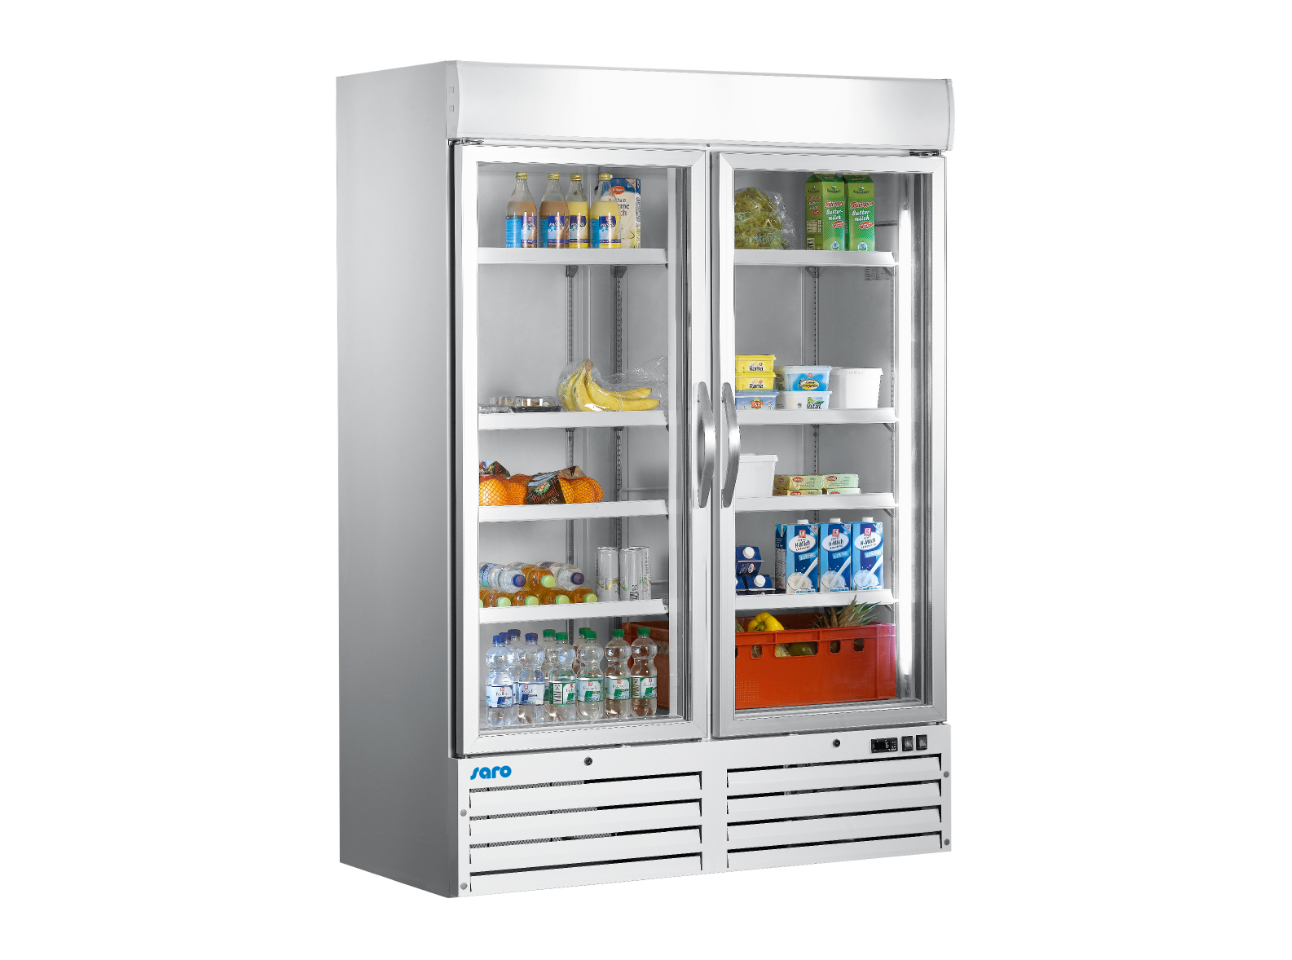 SARO Kühlschrank mit Glastür, 2-türig - weiß Modell G 920